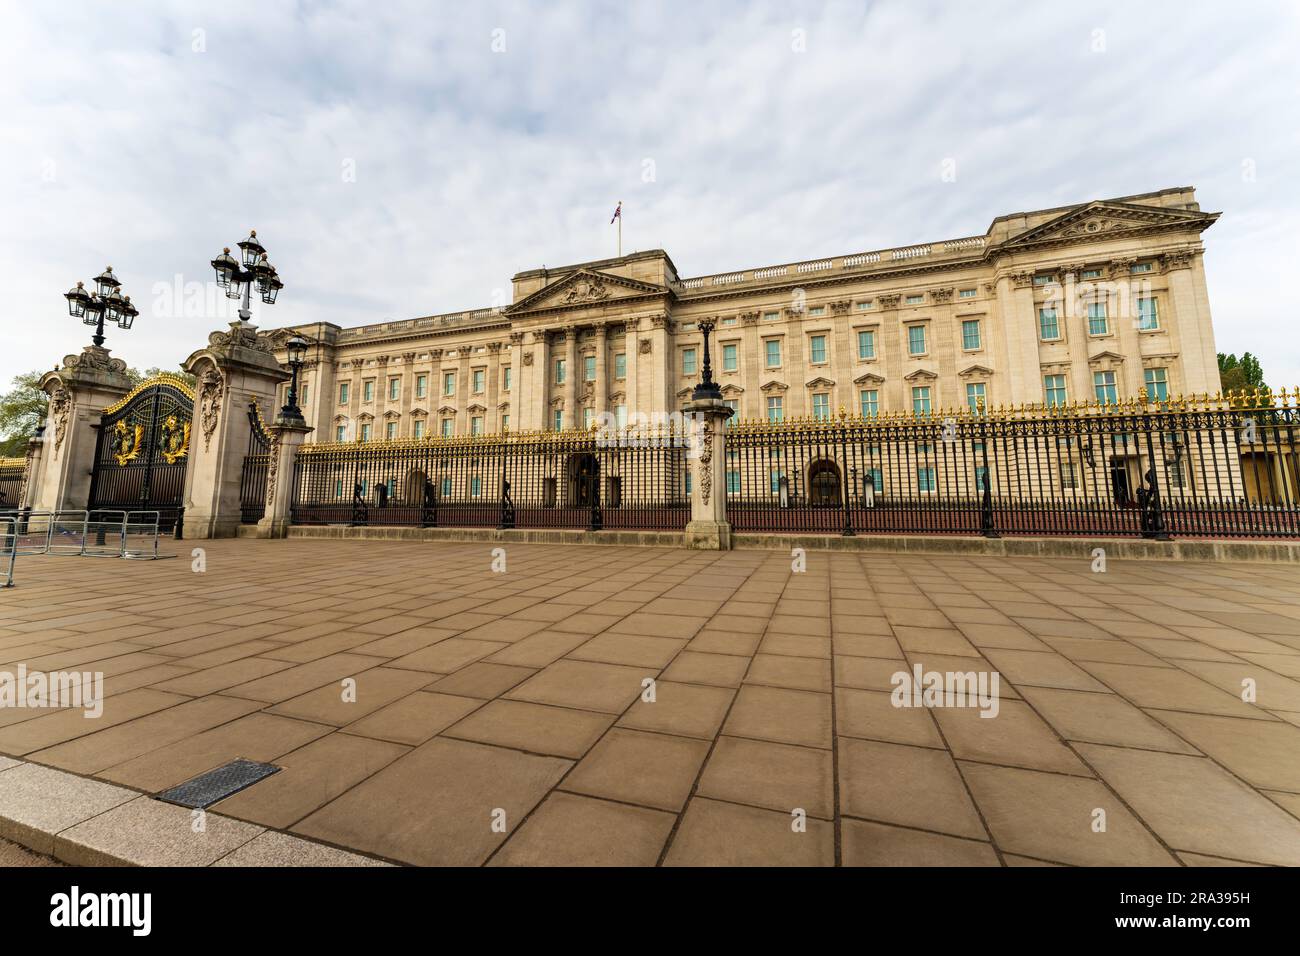 El Palacio de Buckingham, símbolo de la monarquía británica y hogar de reyes, reinas y miembros de la familia real. No hay gente, semana de coronación del rey Carlos II. Foto de stock